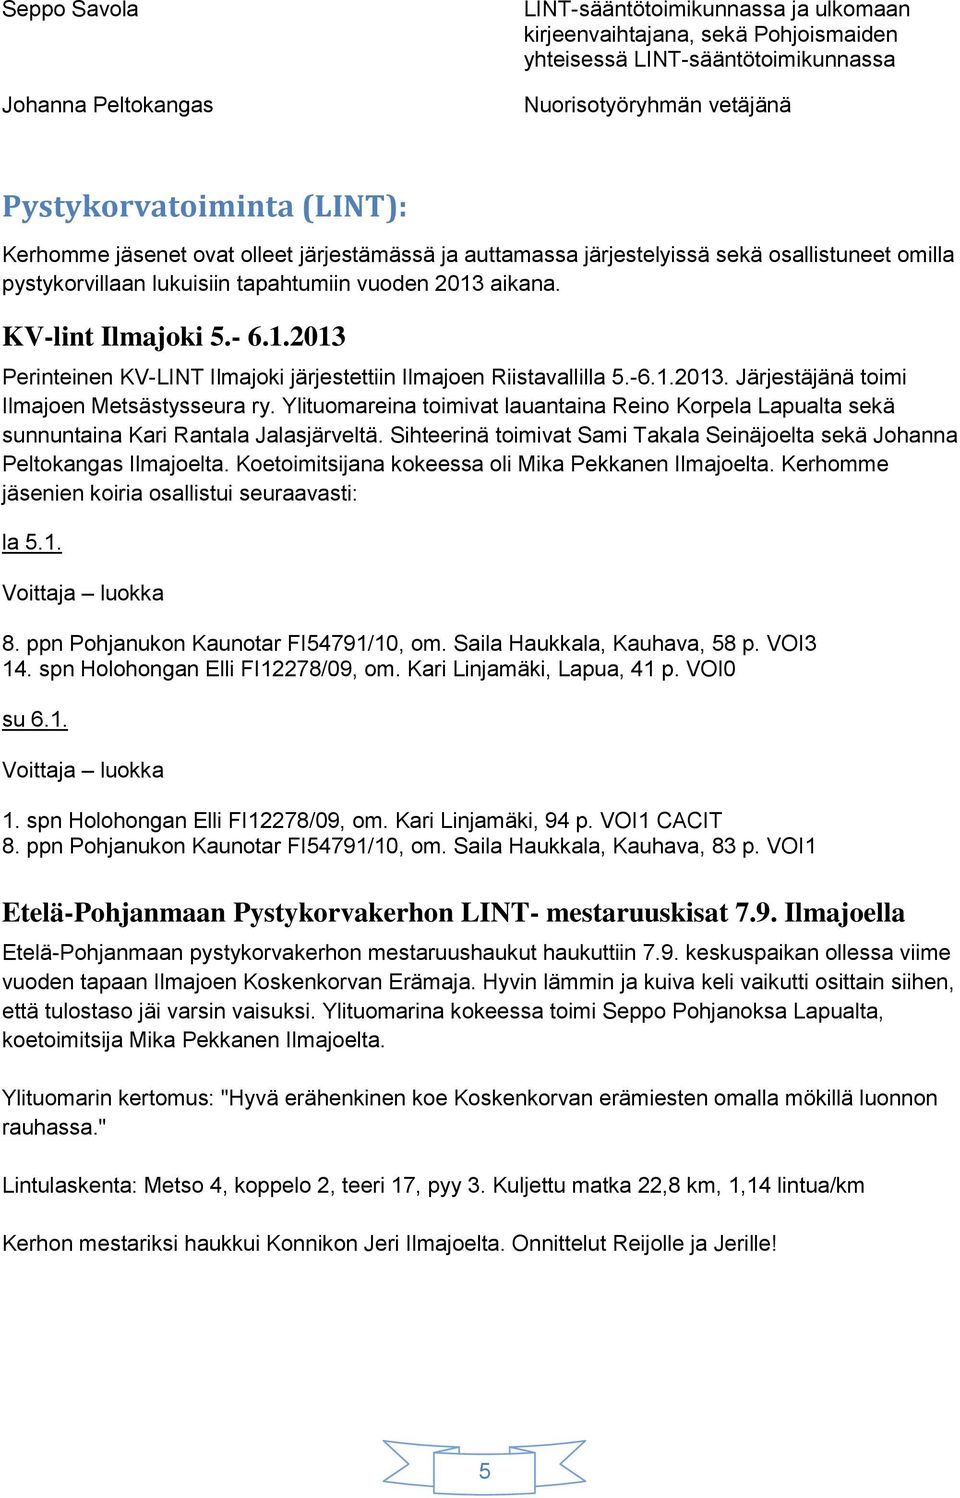 aikana. KV-lint Ilmajoki 5.- 6.1.2013 Perinteinen KV-LINT Ilmajoki järjestettiin Ilmajoen Riistavallilla 5.-6.1.2013. Järjestäjänä toimi Ilmajoen Metsästysseura ry.